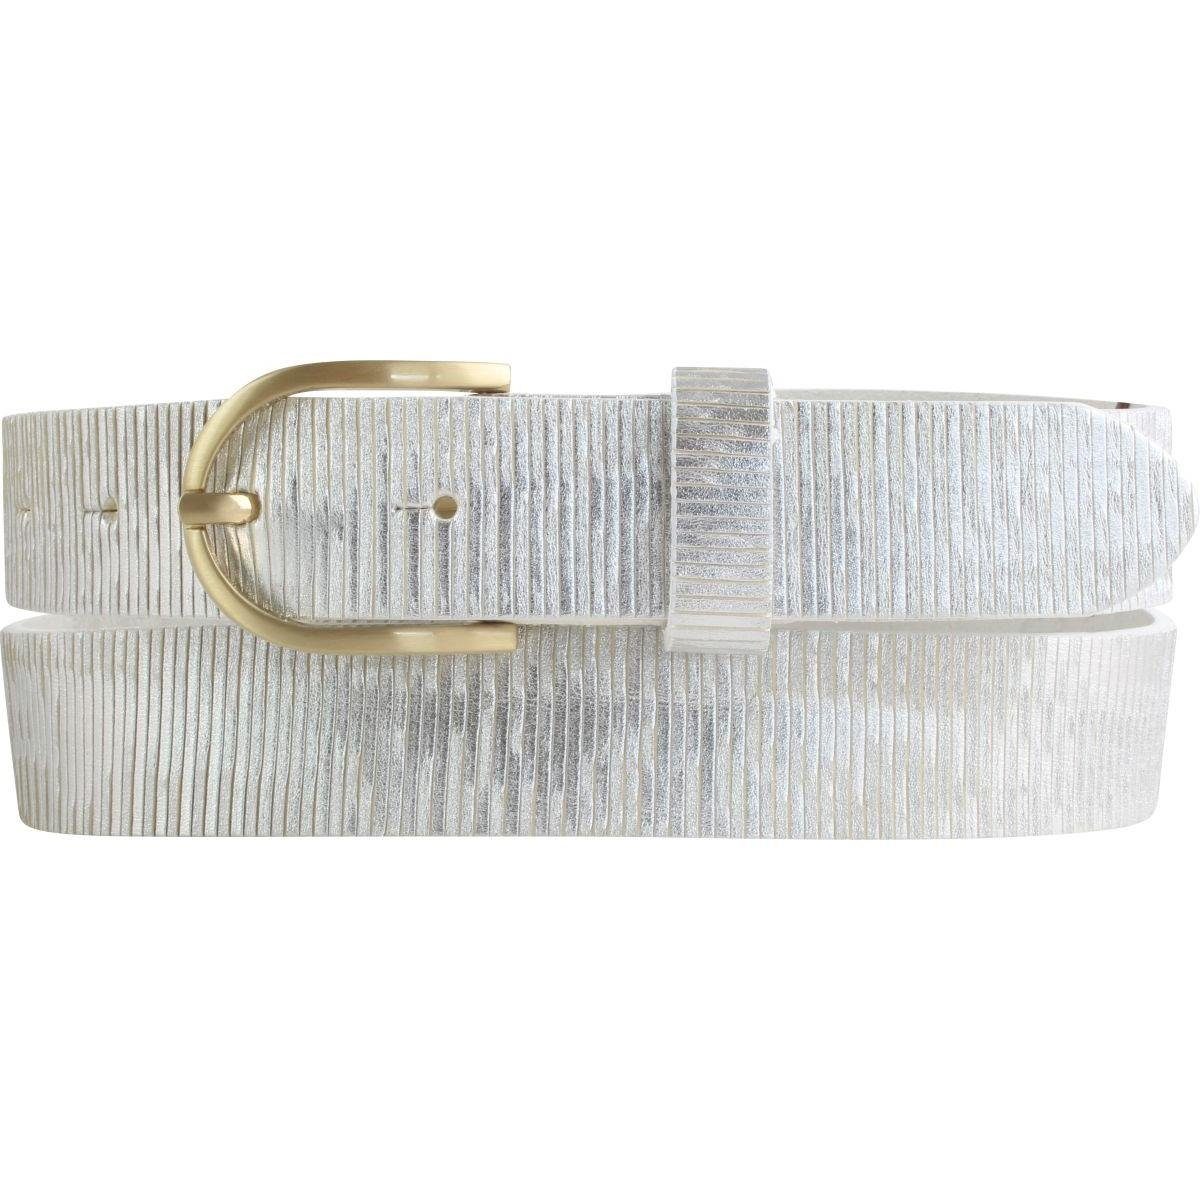 BELTINGER Ledergürtel Damengürtel Metall-Optik aus Vollrindleder 3 cm - Damen-Gürtel Metalli Weiß, Gold